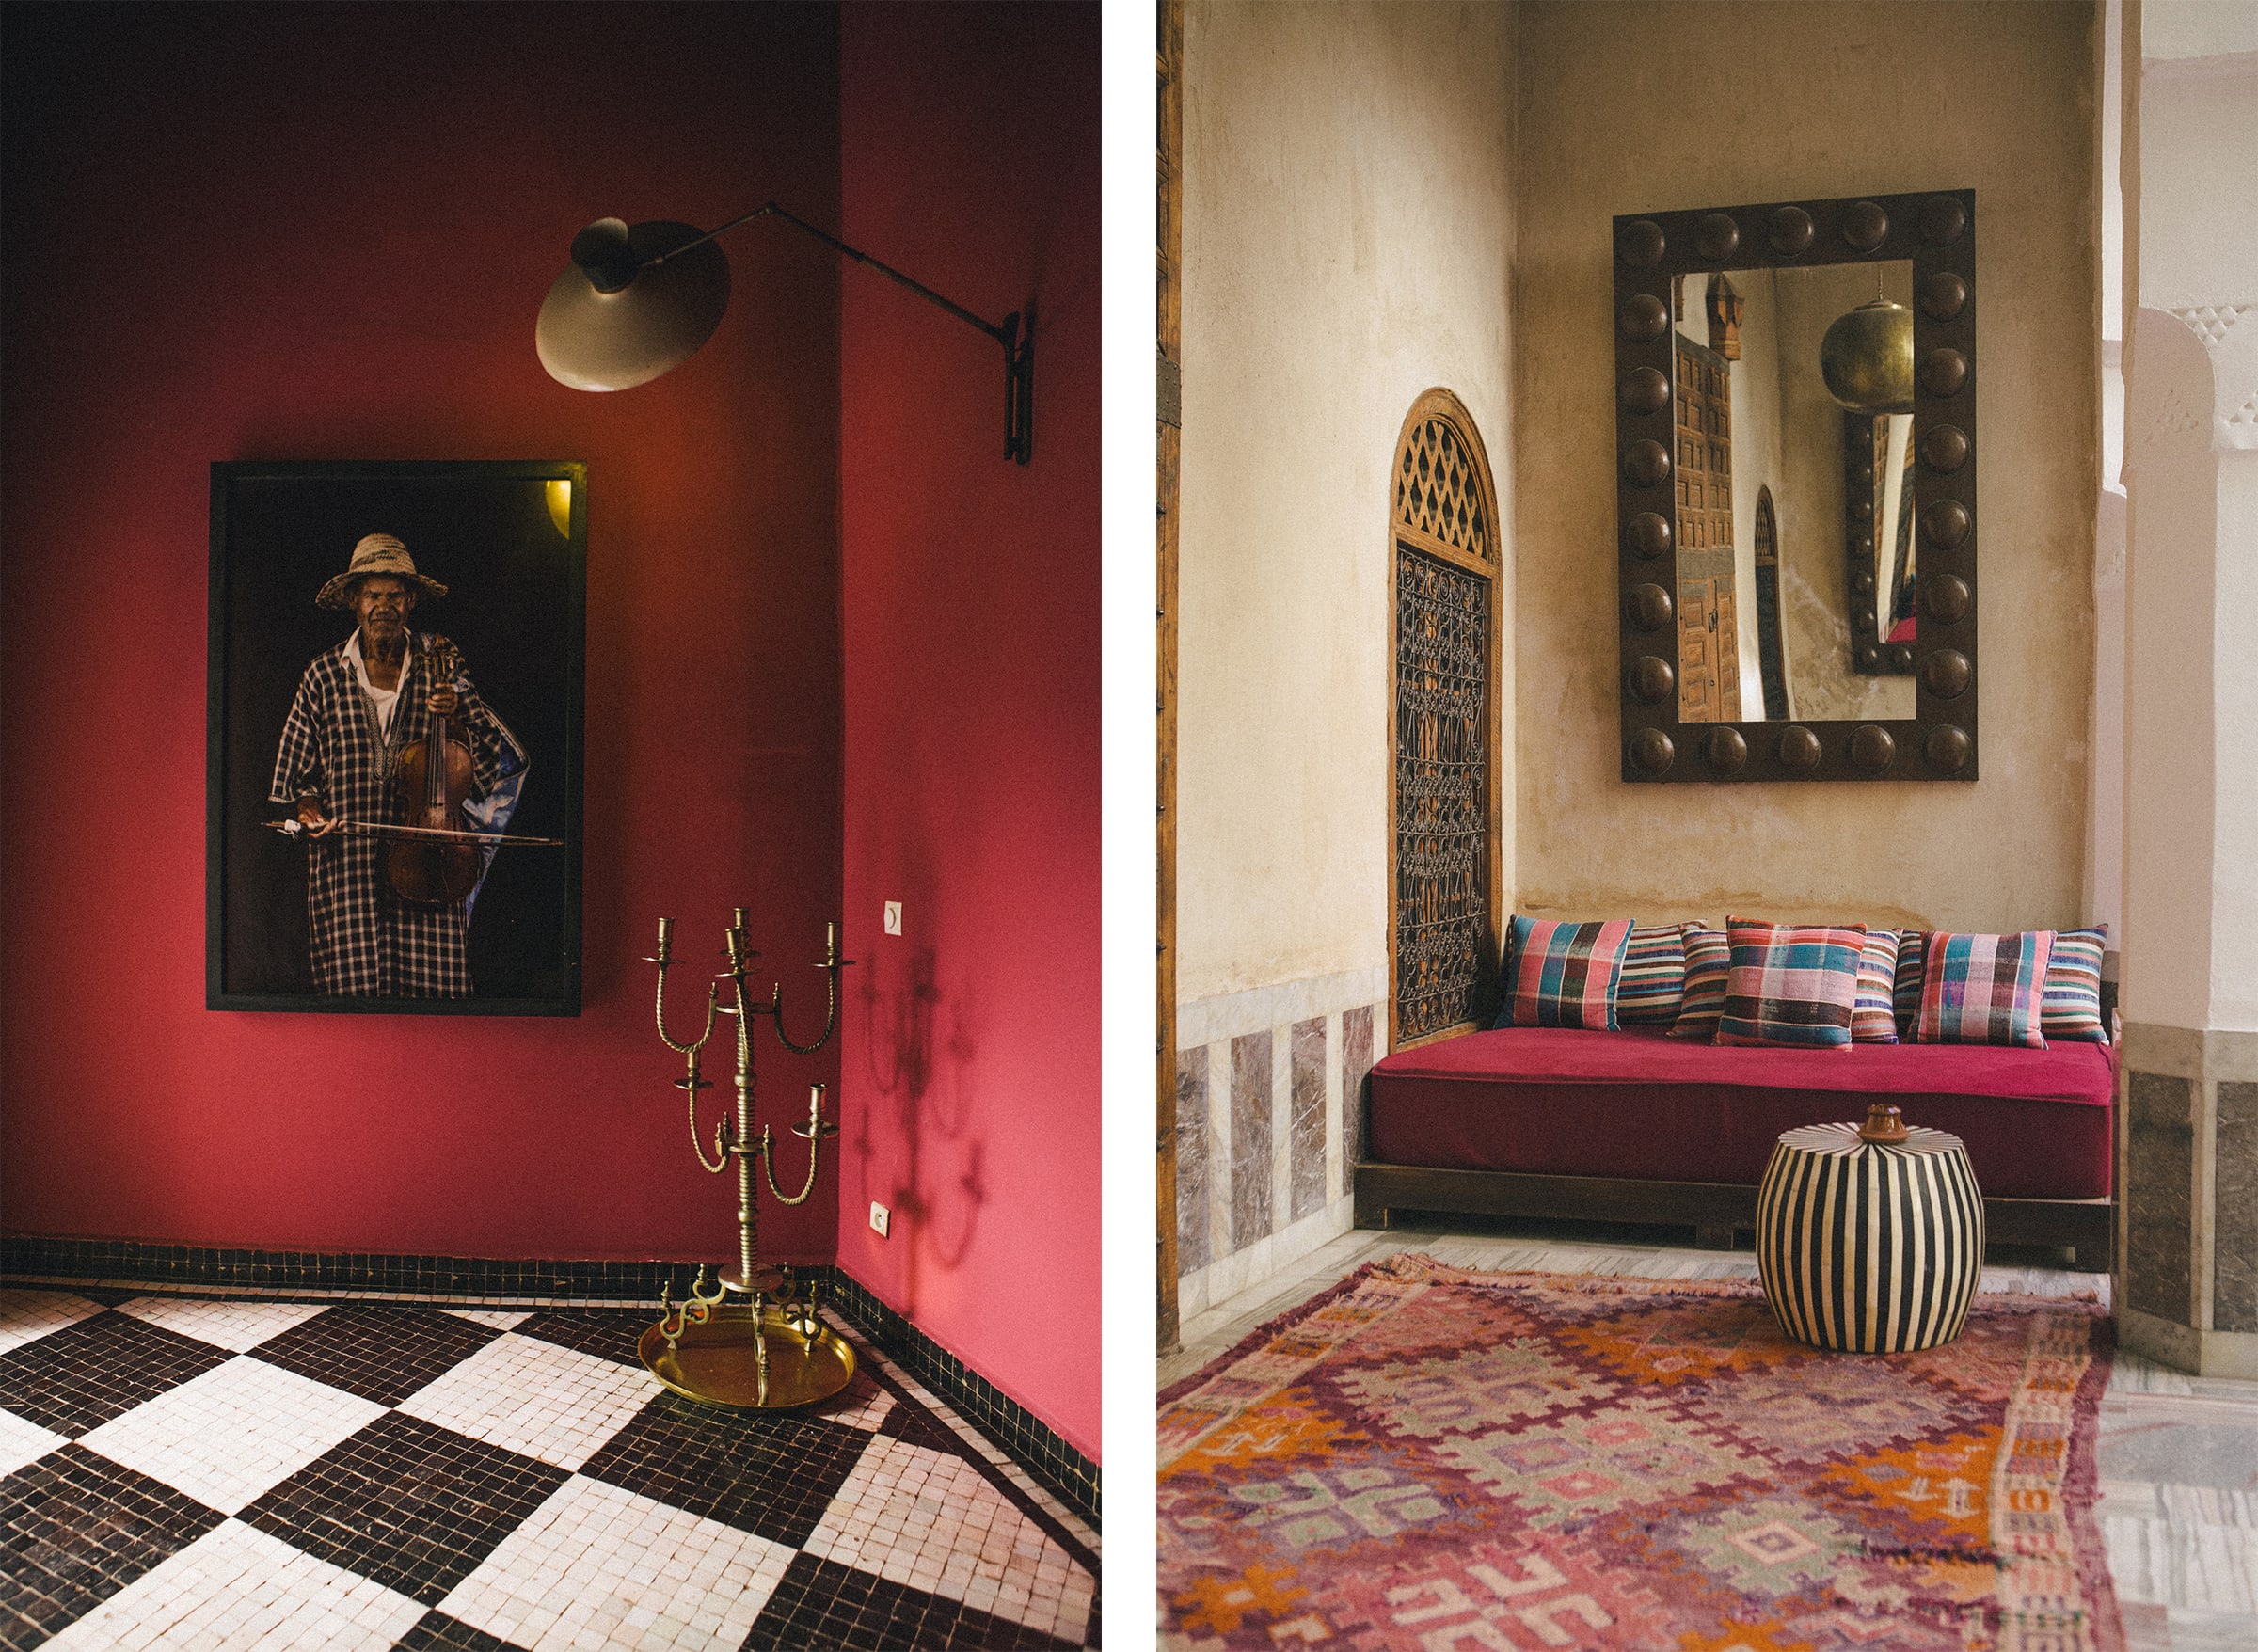 Vues du Riad El-Fenn, fondé par Vanessa Branson. À gauche, une œuvre de la photographe franco-marocaine Leila Alaoui. Photographie de Yasmine Hatimi for Art Basel.